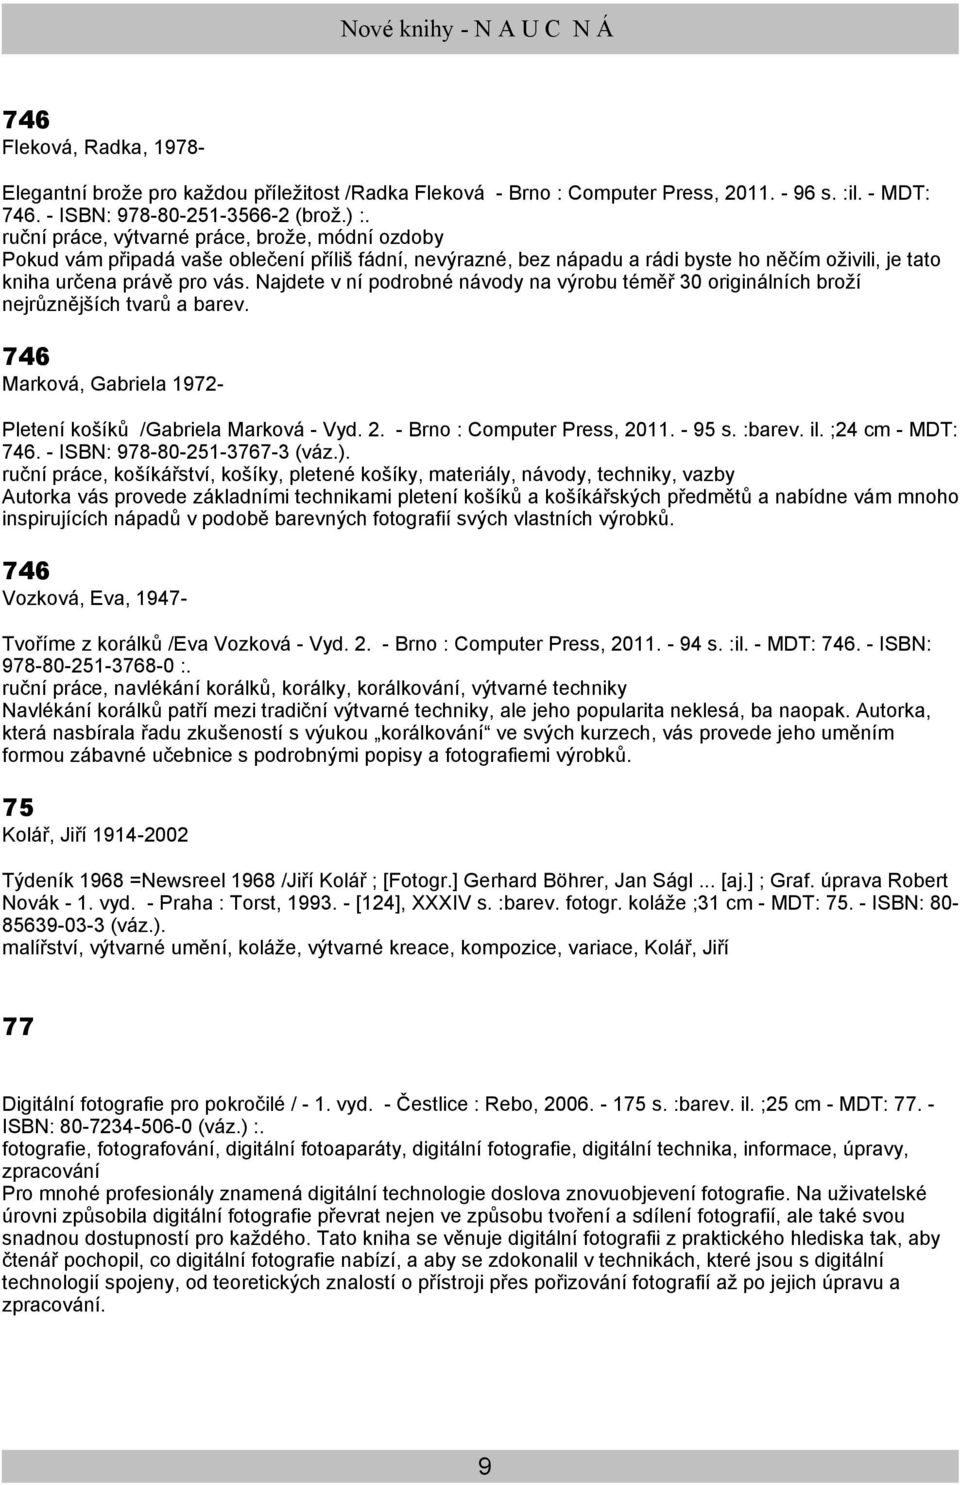 Najdete v ní podrobné návody na výrobu téměř 30 originálních broží nejrůznějších tvarů a barev. 746 Marková, Gabriela 1972- Pletení košíků /Gabriela Marková - Vyd. 2. - Brno : Computer Press, 2011.